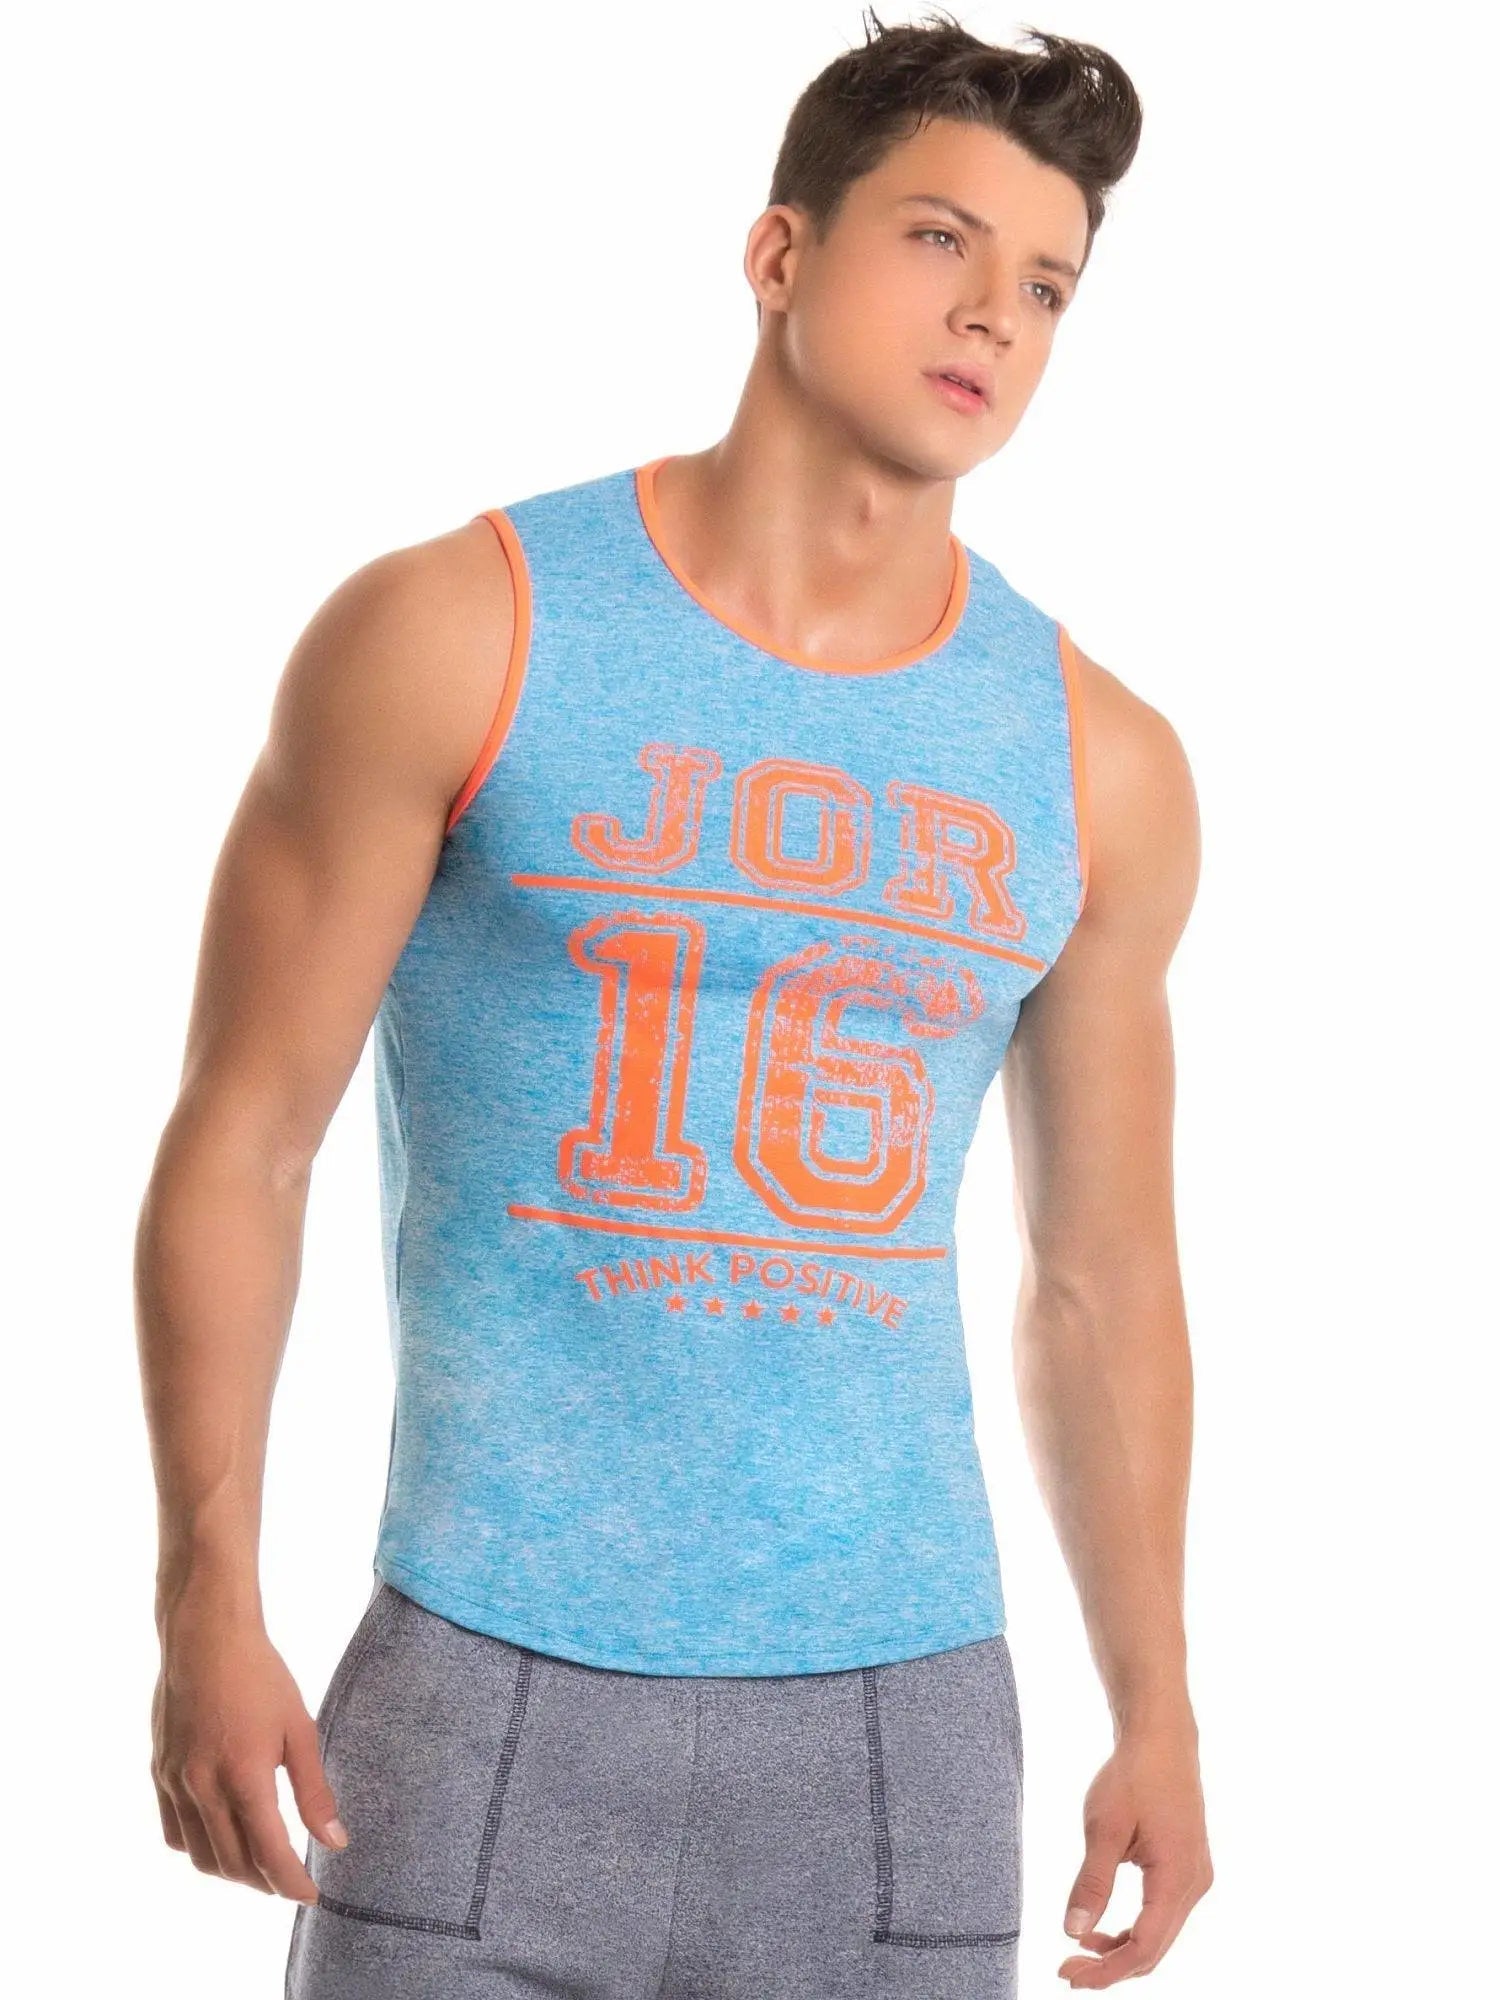 JOR 0233 NEON Tank Top Muscleshirt Mukelshirt ärmelloses T-Shirt Singlet - noodosz